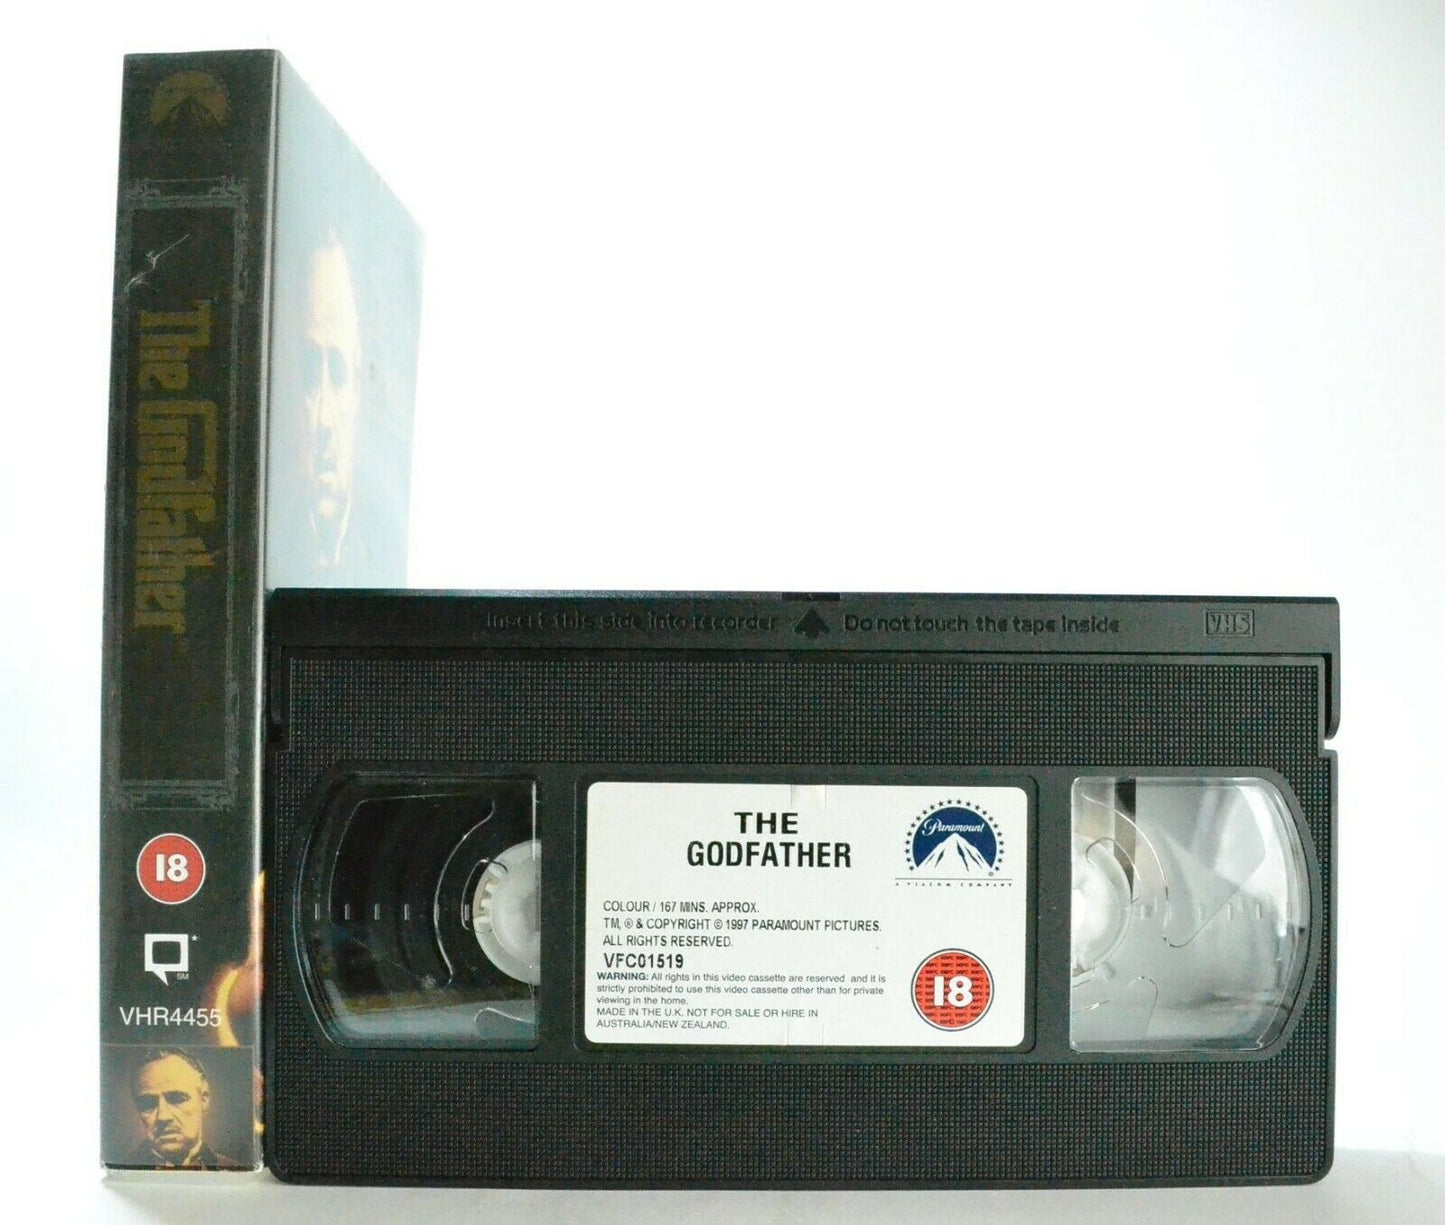 The Godfather: Based On M.Puzo Novel - Crime Drama (1972) - Marlon Brando - VHS-